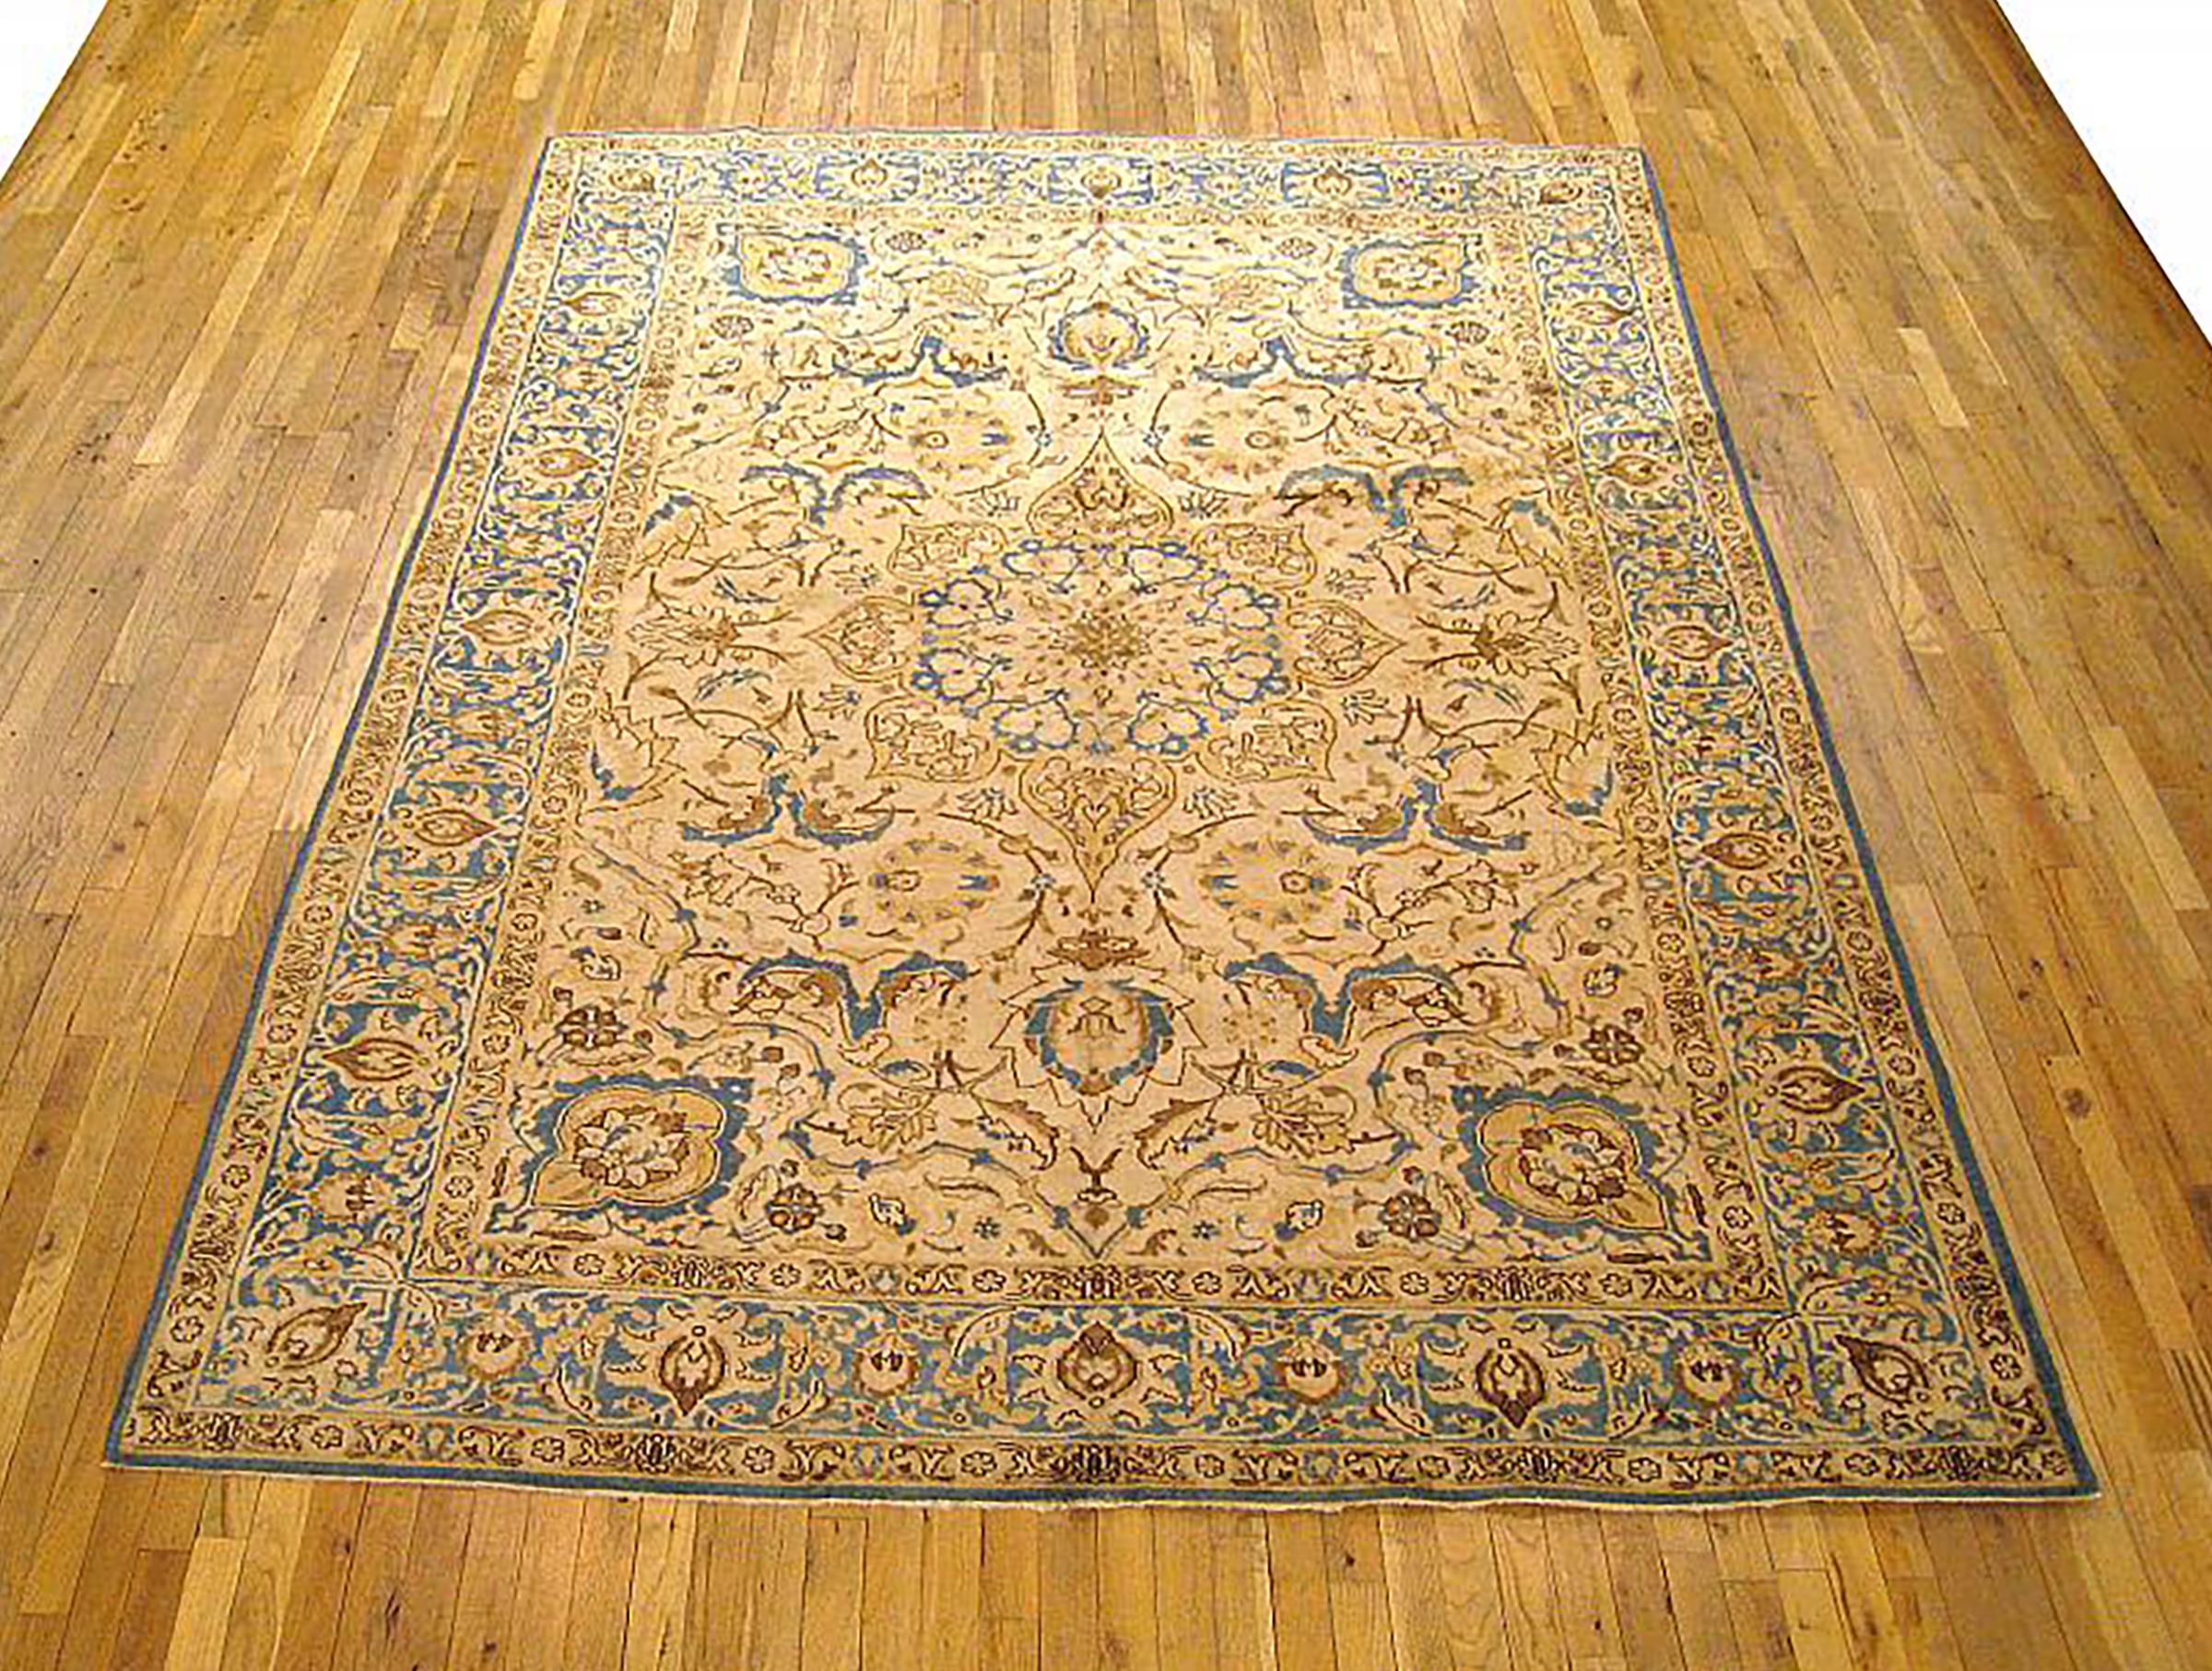 Antique Persian Tabriz Oriental carpet, circa 1920, room sized.

An antique Persian Tabriz oriental carpet, circa 1920. Size: 9'6